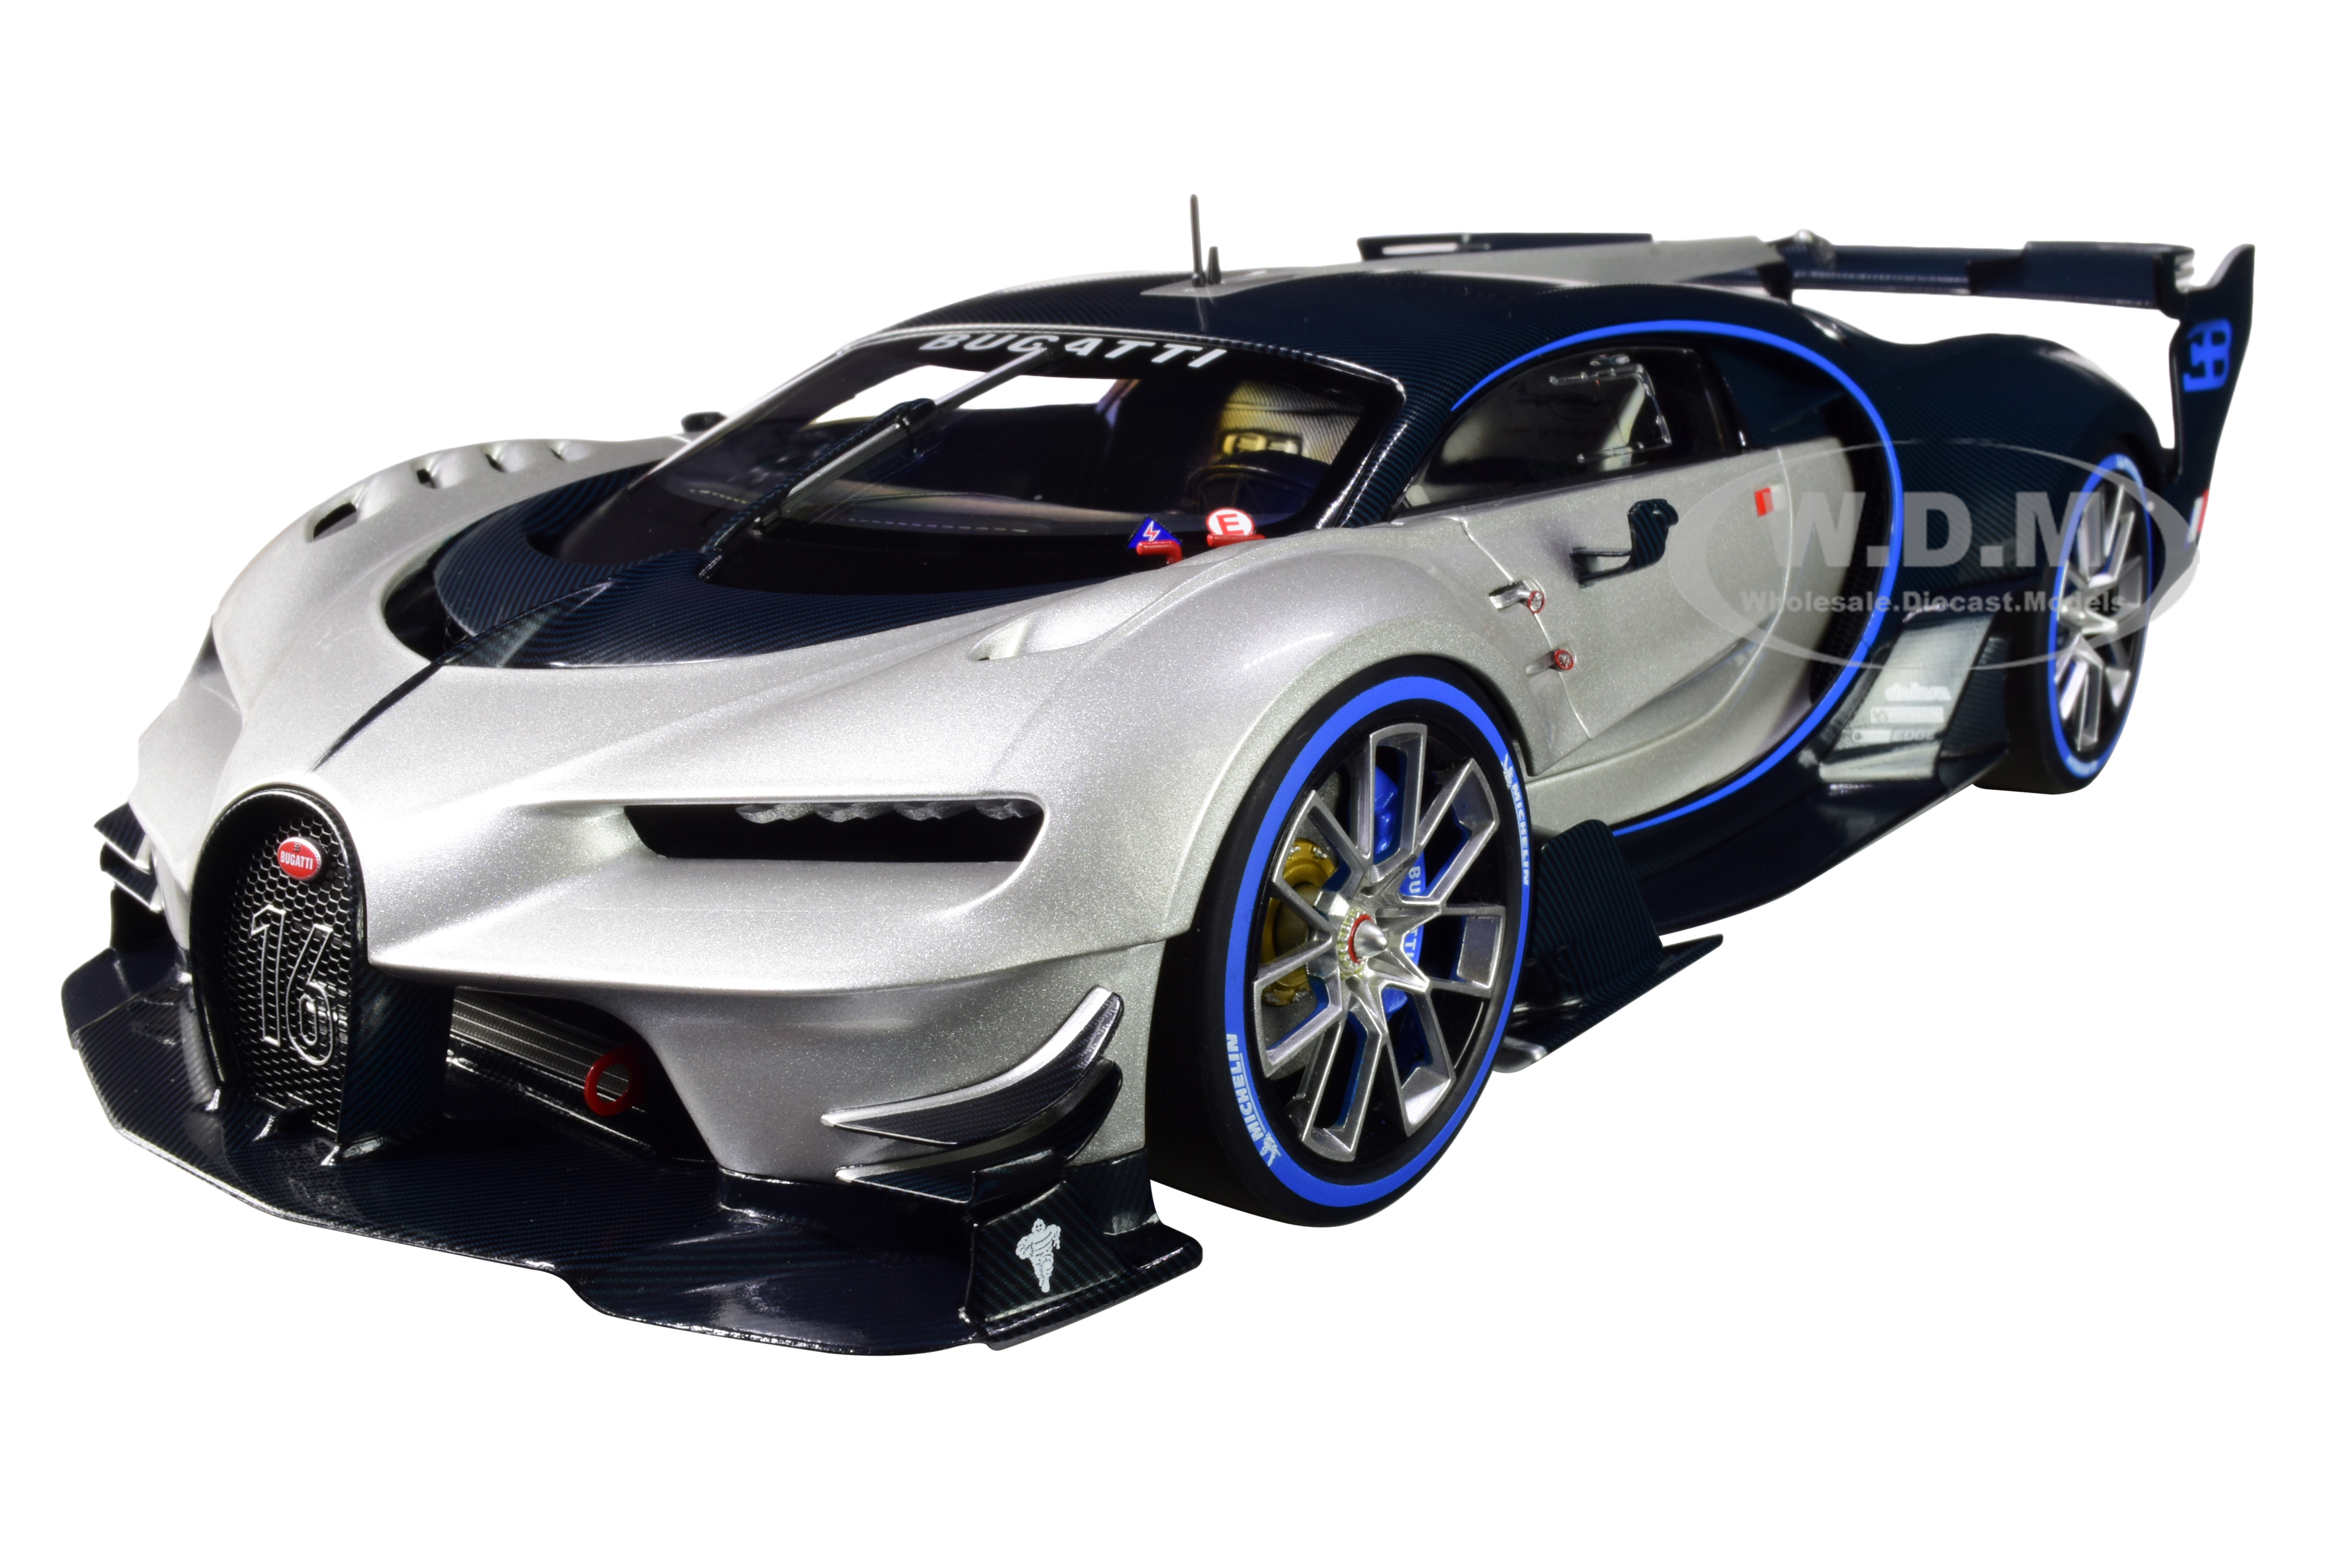 Bugatti Vision Gran Turismo "16" Argent Silver And Blue Carbon Fiber 1/18 Model Car By Autoart